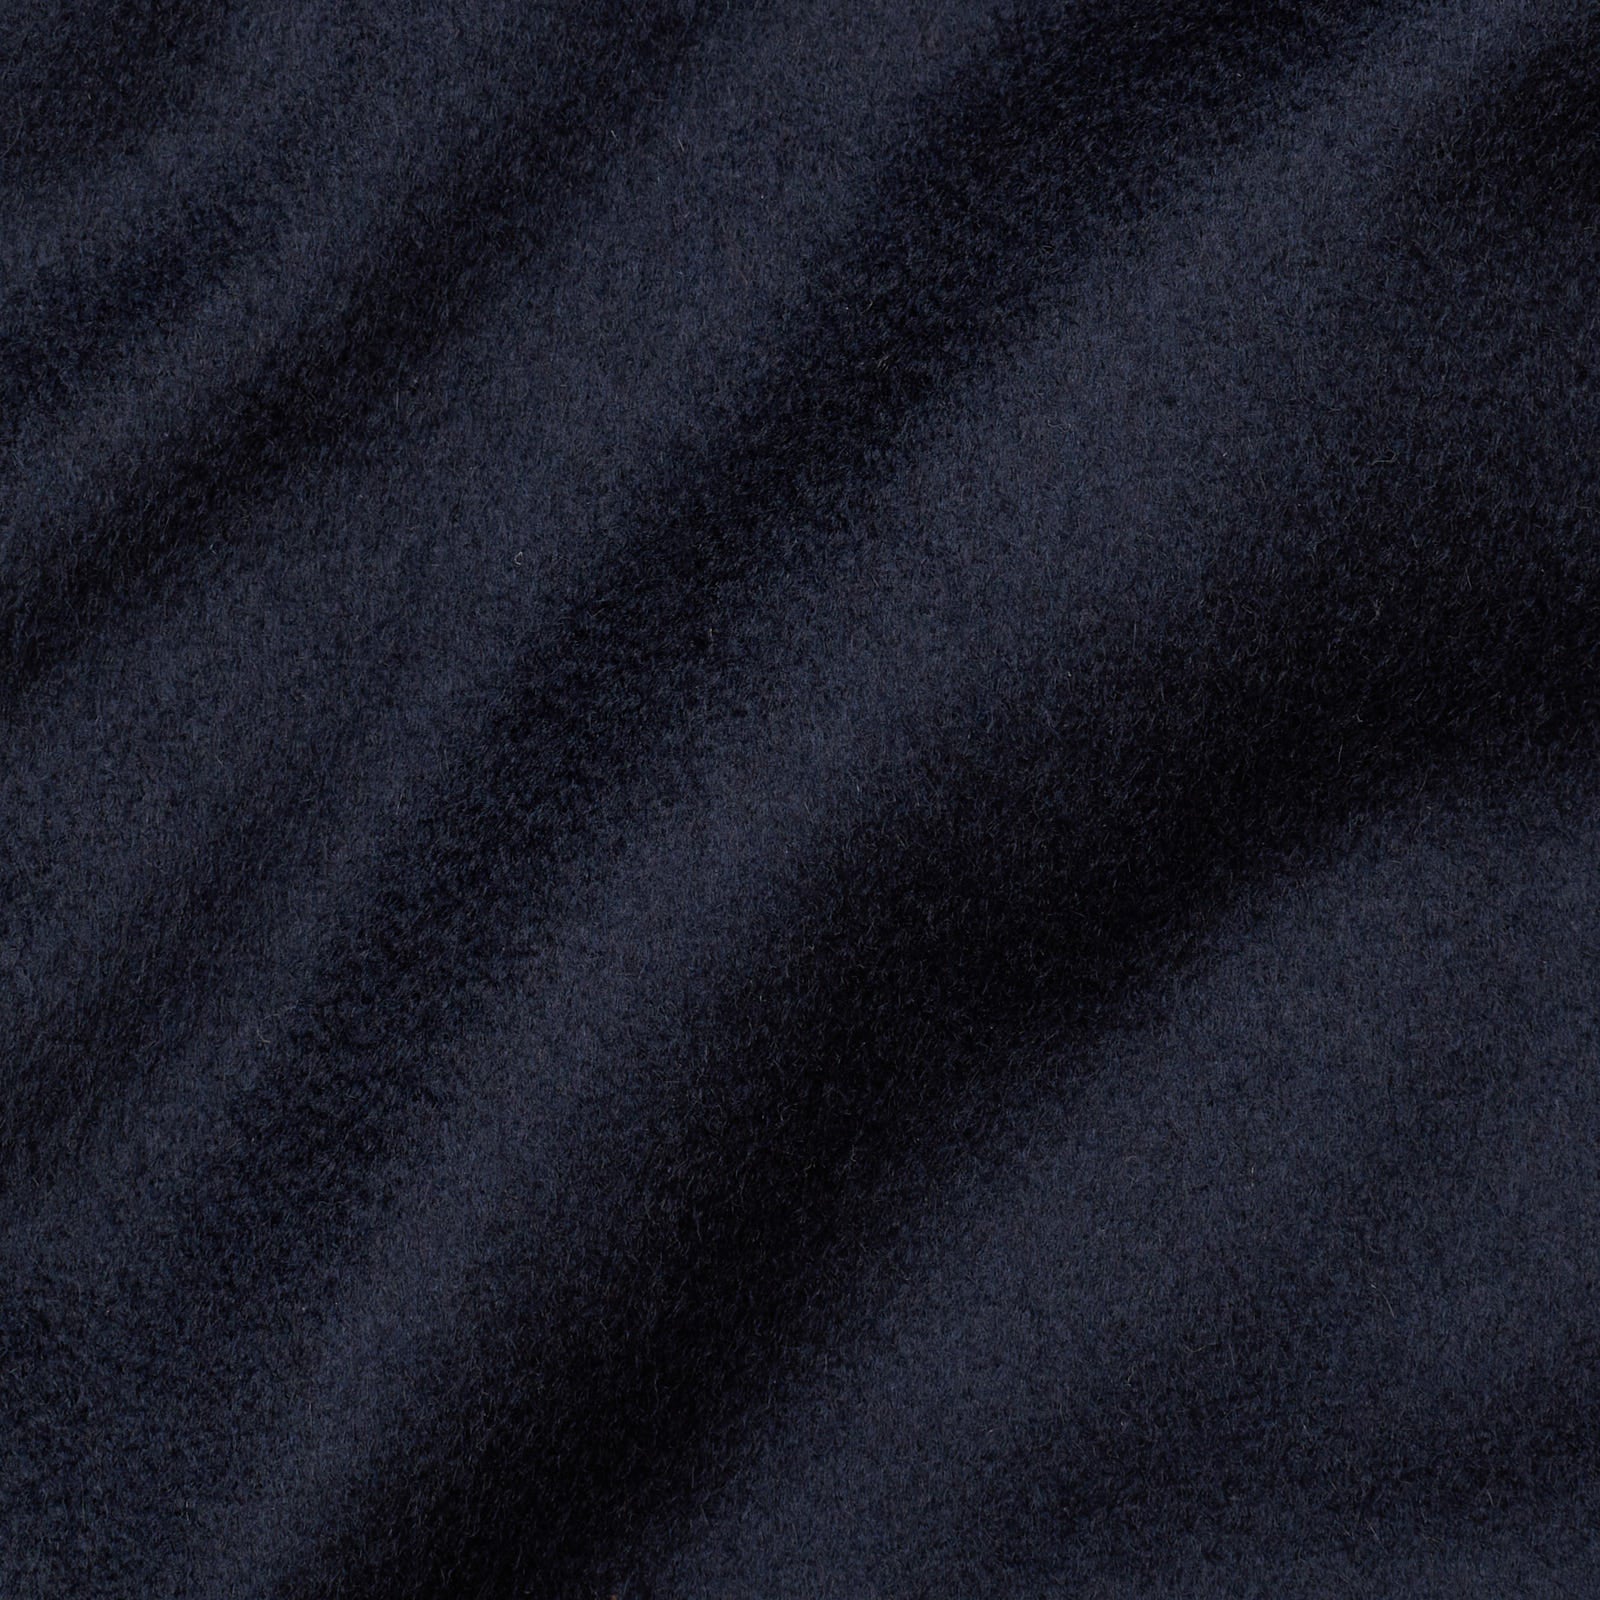 KITON KIRED "Oglio" Navy Blue Cashmere Primaloft DB Pea Coat Jacket EU 50 US 40 KIRED